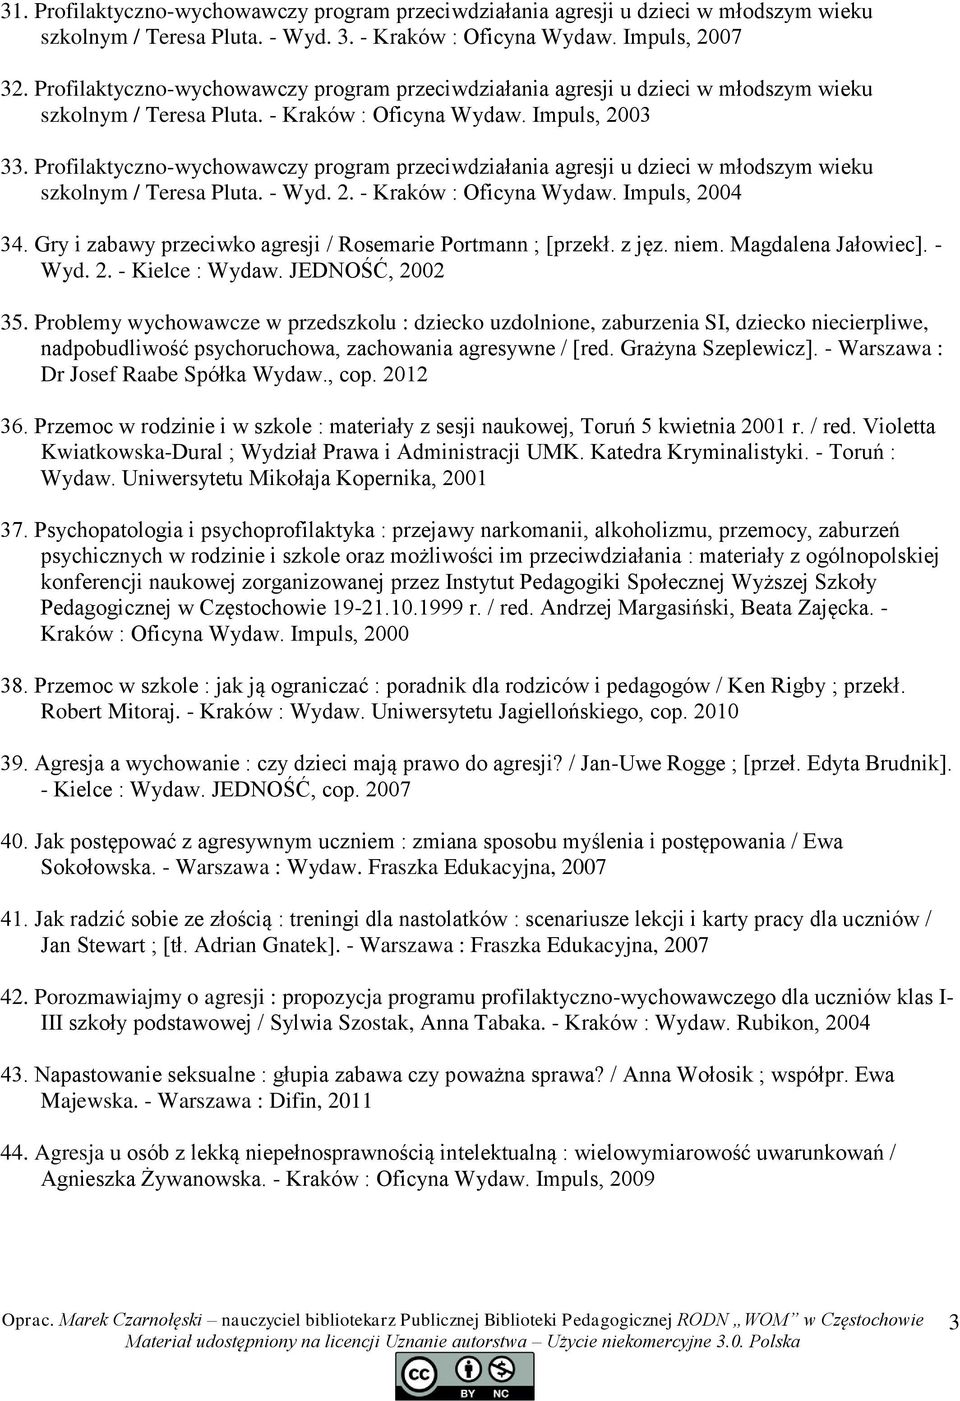 Profilaktyczno-wychowawczy program przeciwdziałania agresji u dzieci w młodszym wieku szkolnym / Teresa Pluta. - Wyd. 2. - Kraków : Oficyna Wydaw. Impuls, 2004 34.